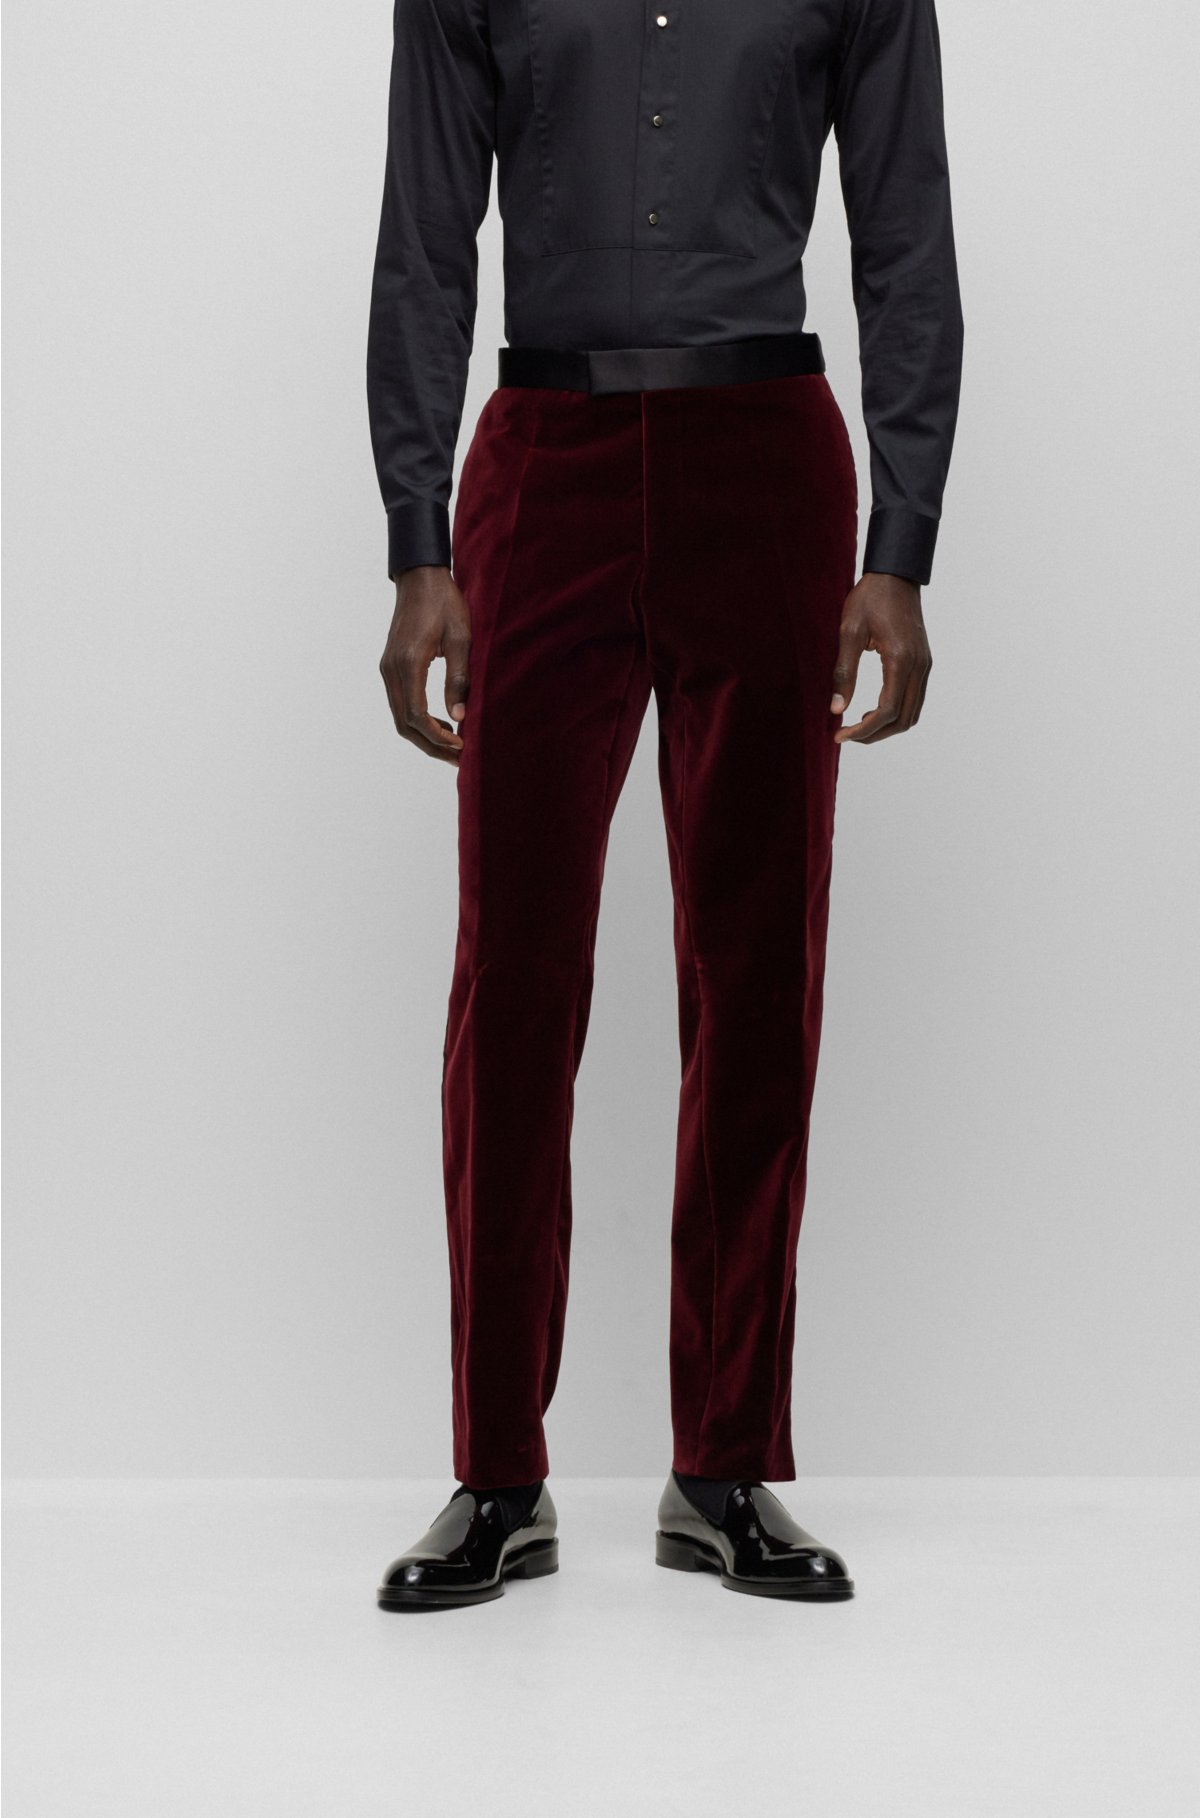 2022 New Solid Color Slim Fit Formal Pants For Men Best Dress Belt